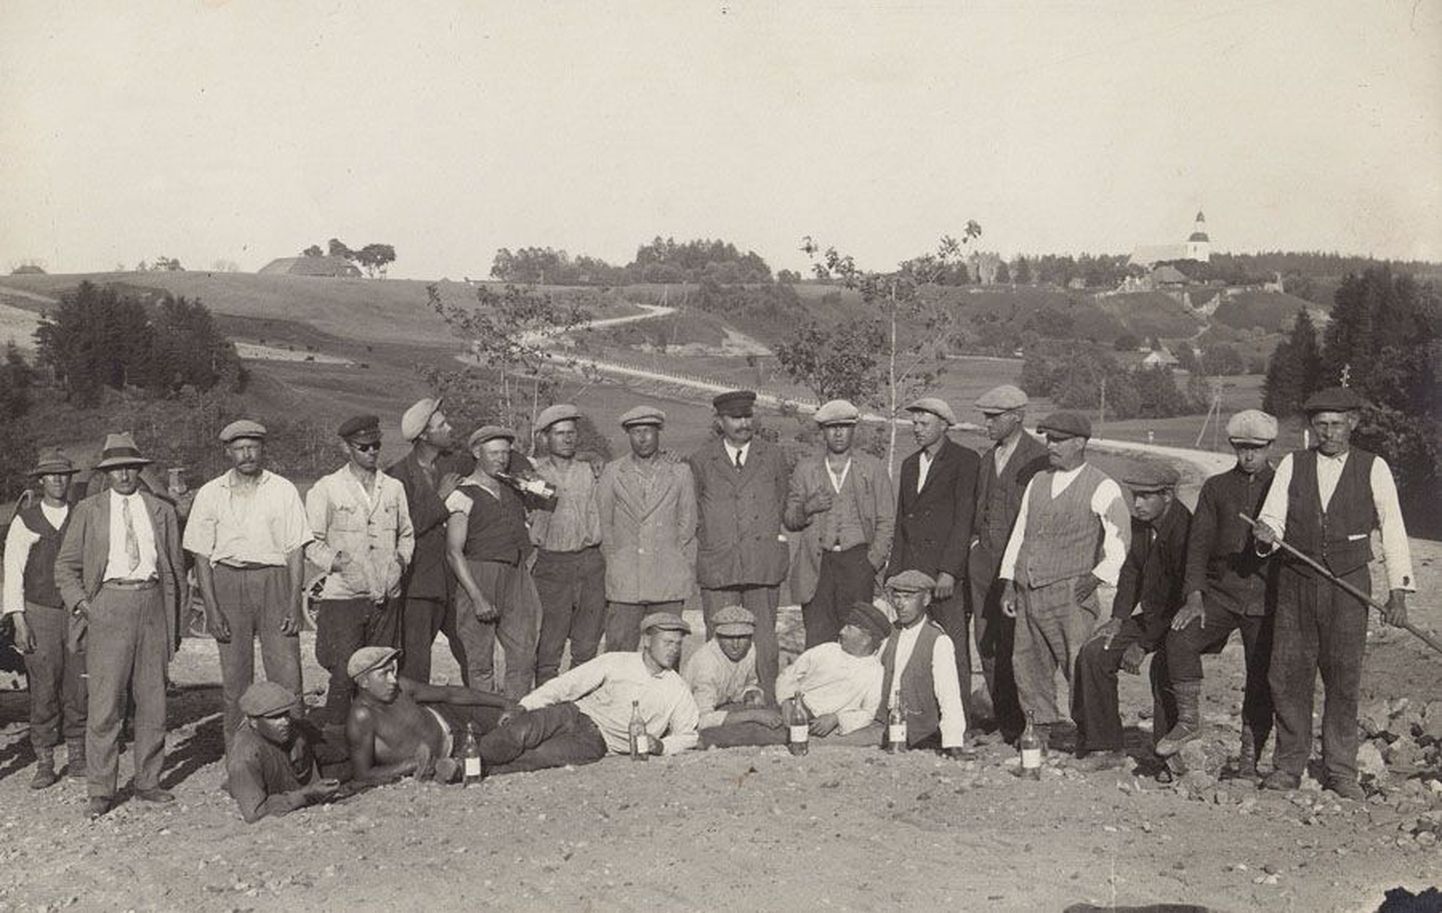 Nuia—Karksi tee ehitajad on fotole jäädvustatud aastal 1929. Postkaart pärineb Olev Bendi kogust.